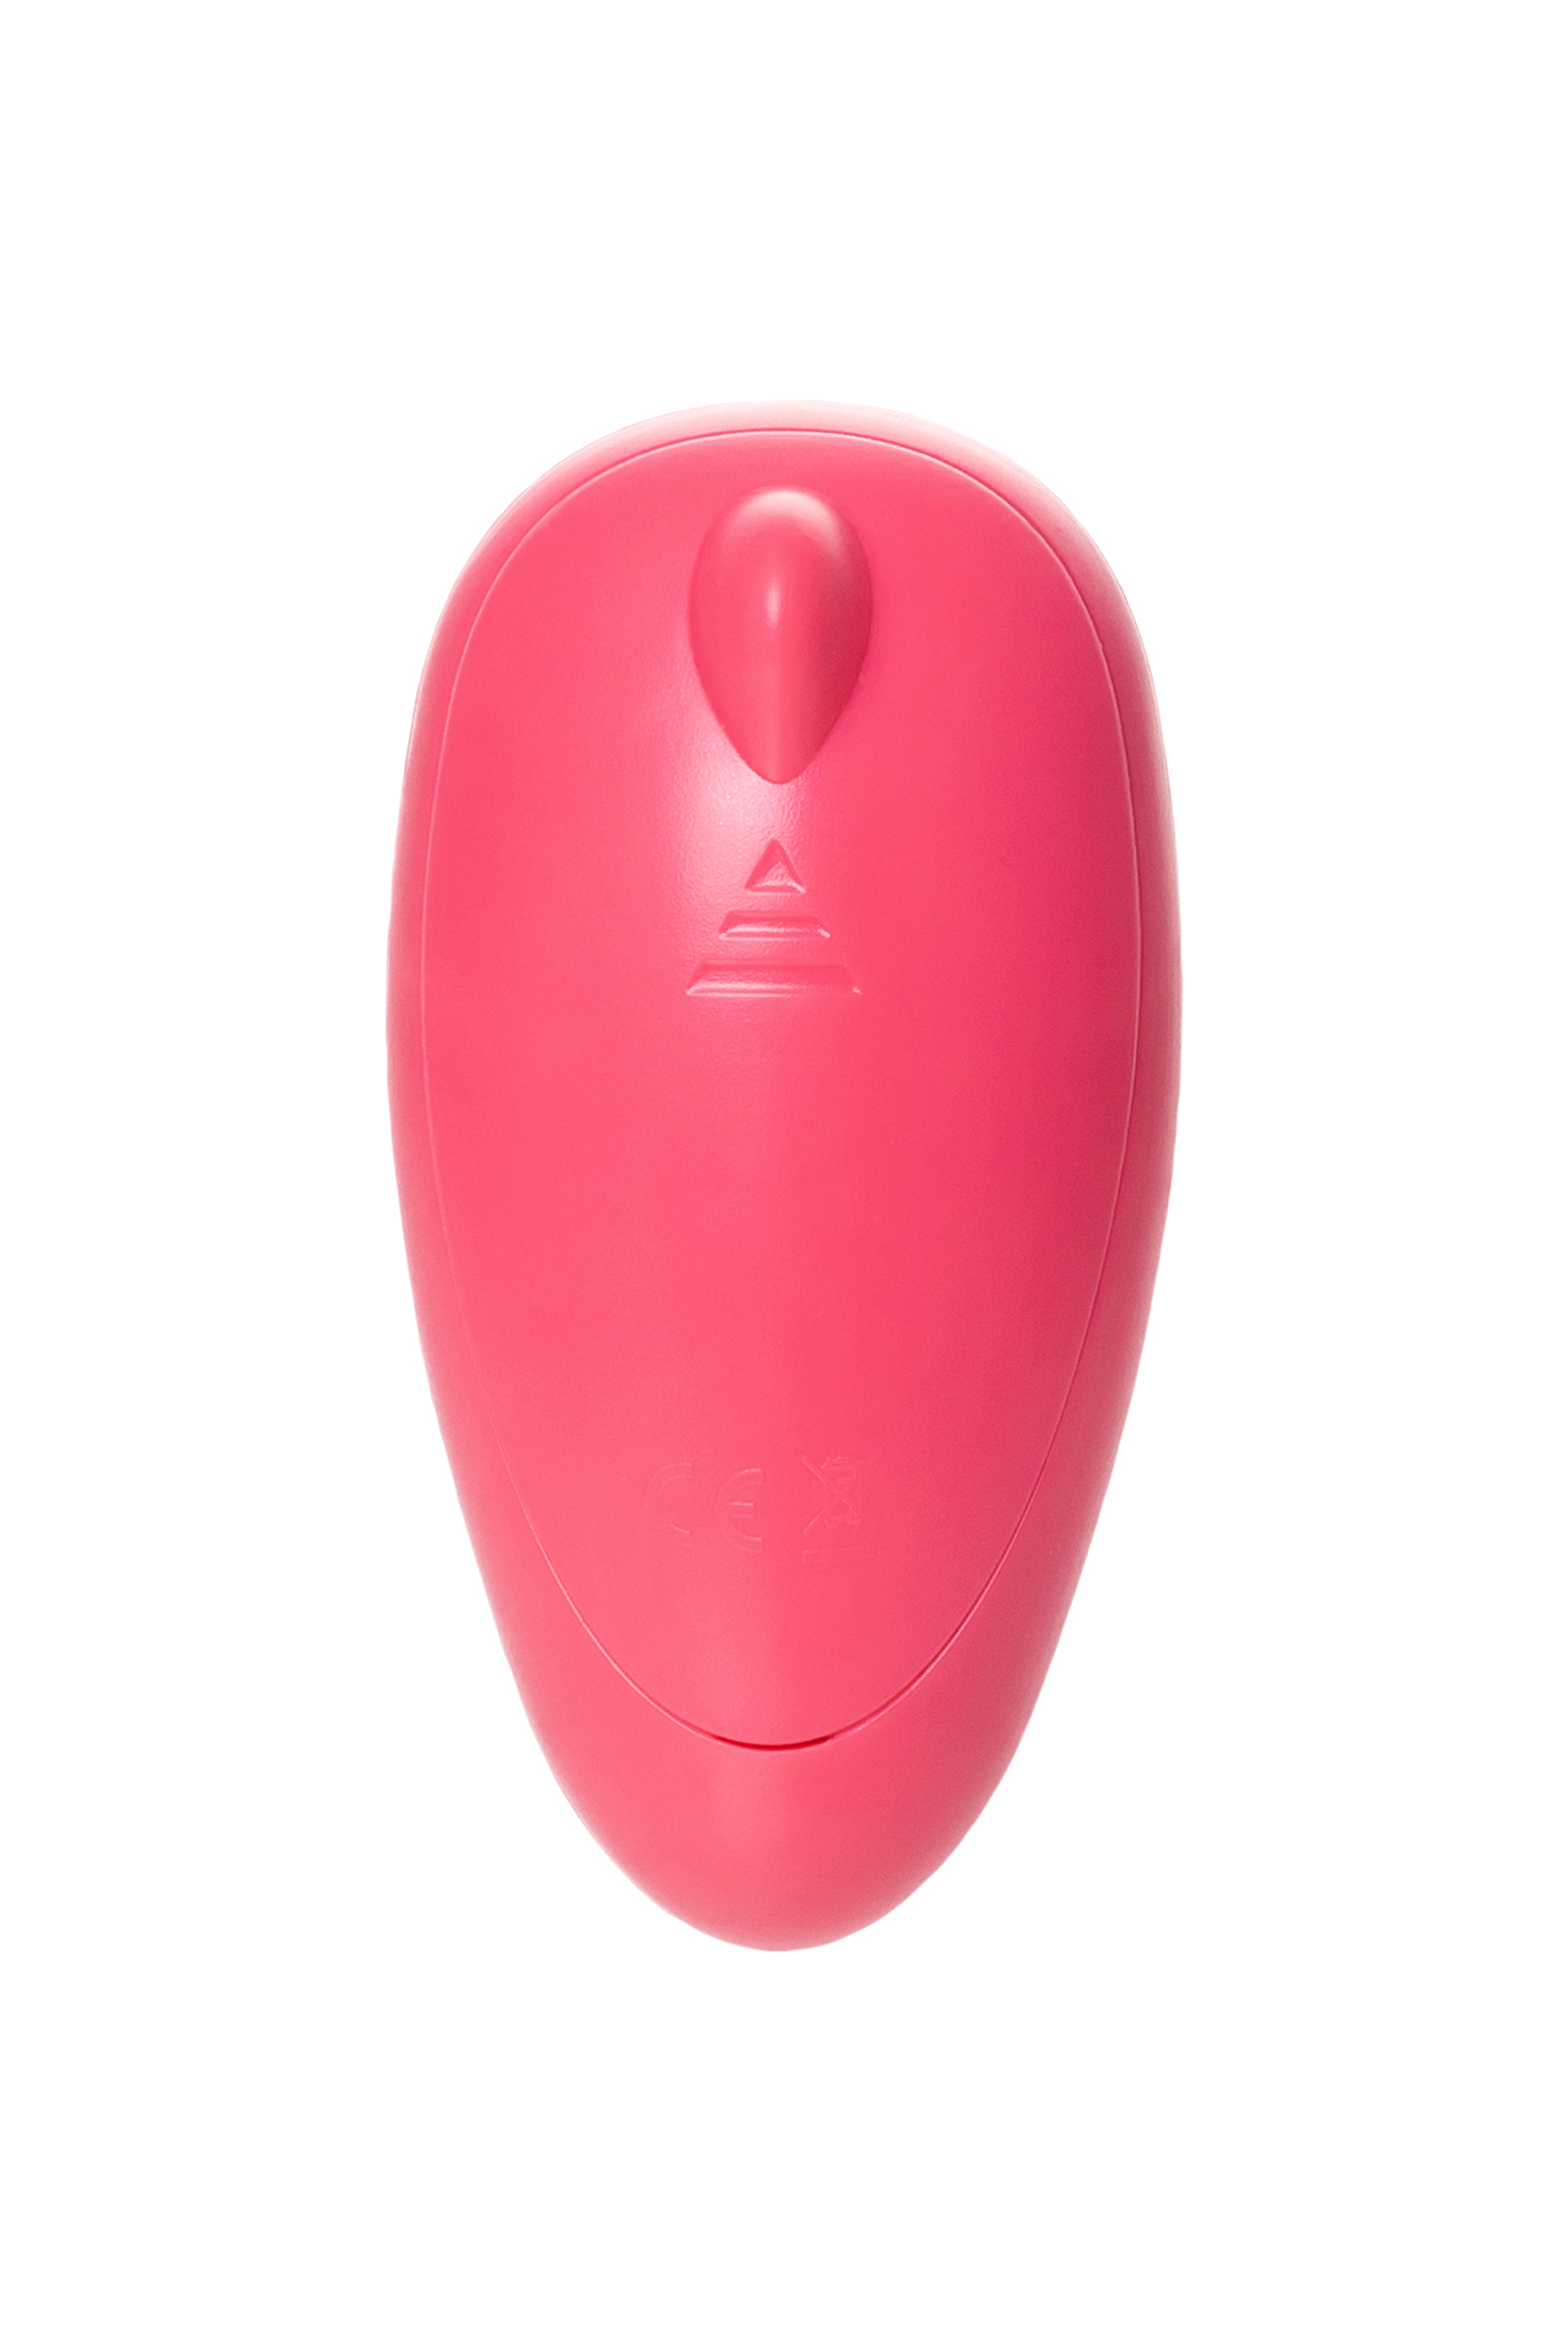 Вакуумный стимулятор клитора PPP CHUPA-CHUPA ZENGI ROTOR, ABS-пластик, розовый, 9 см. Фото N5